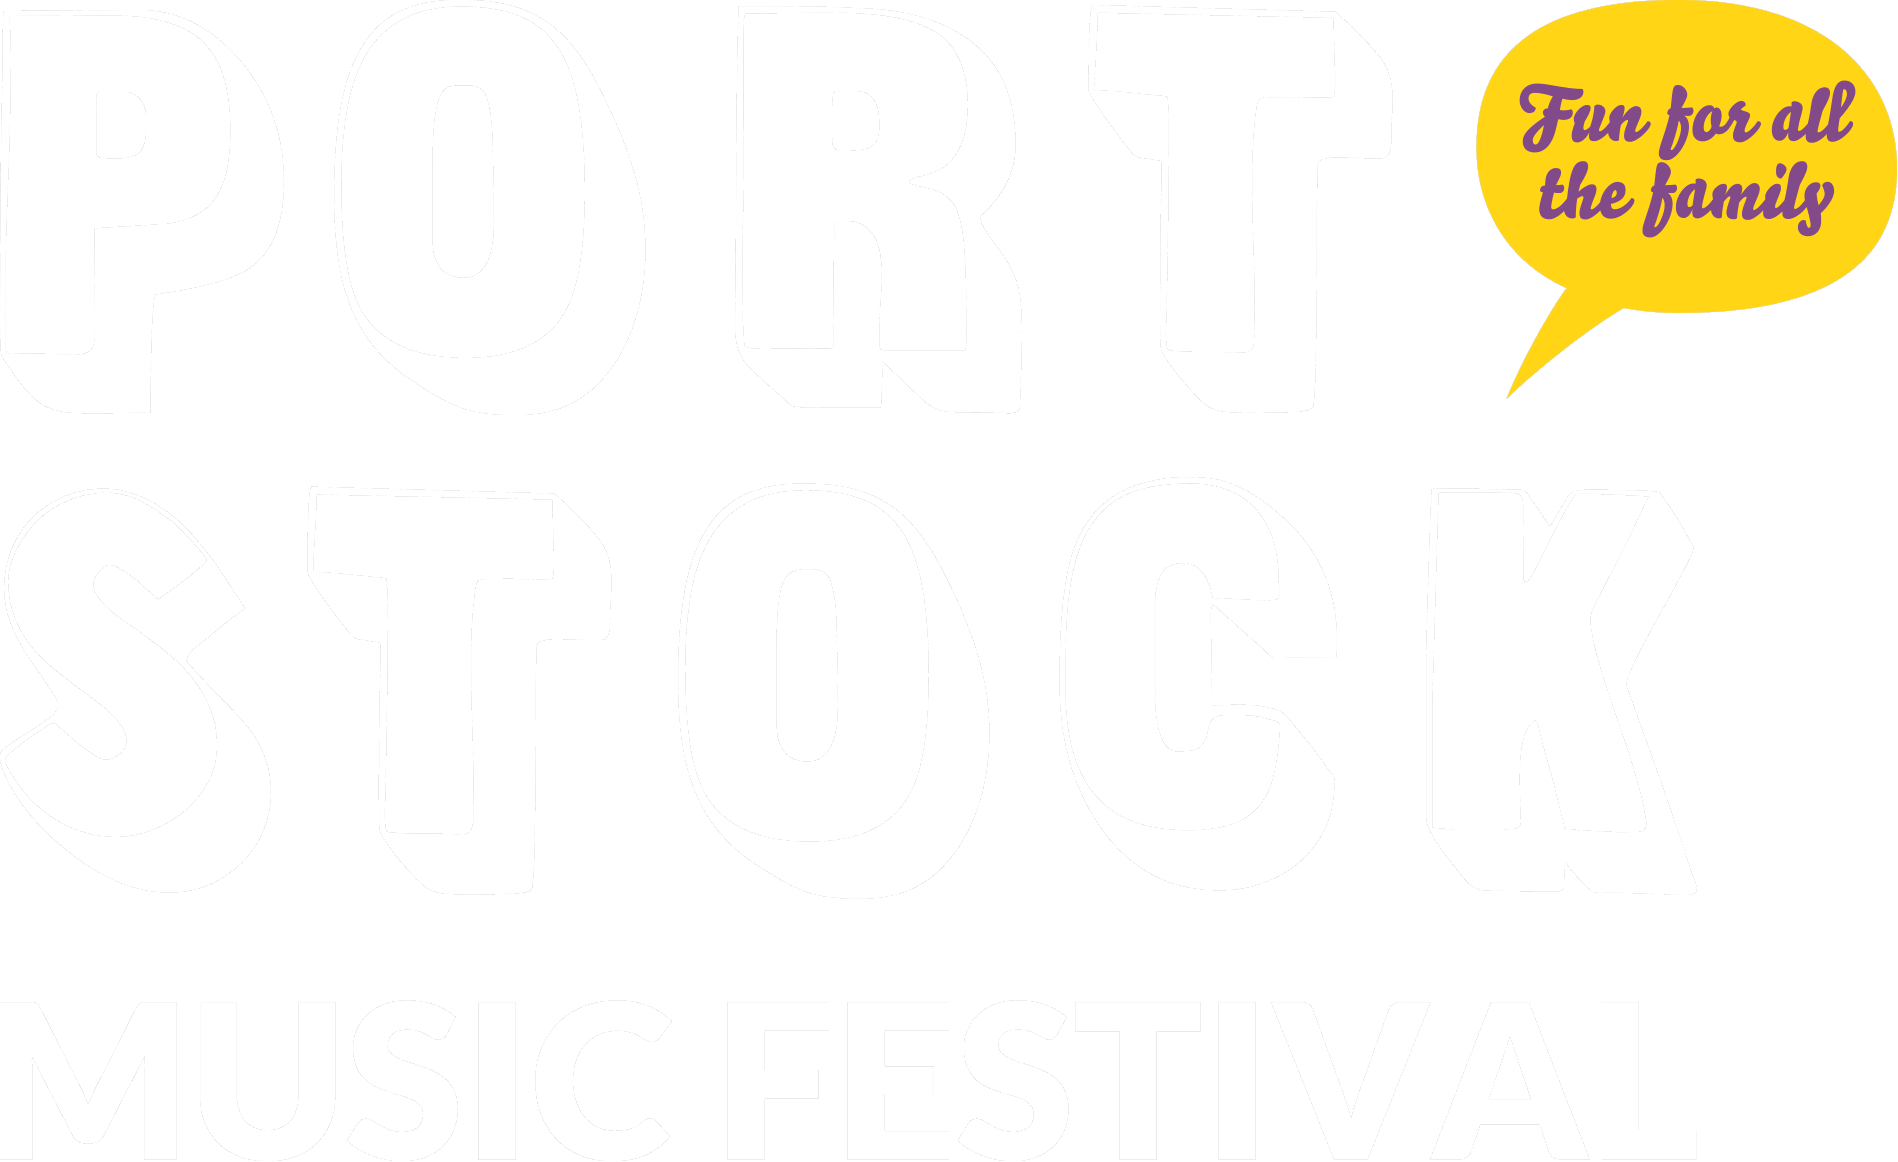 Portstock Music Festival